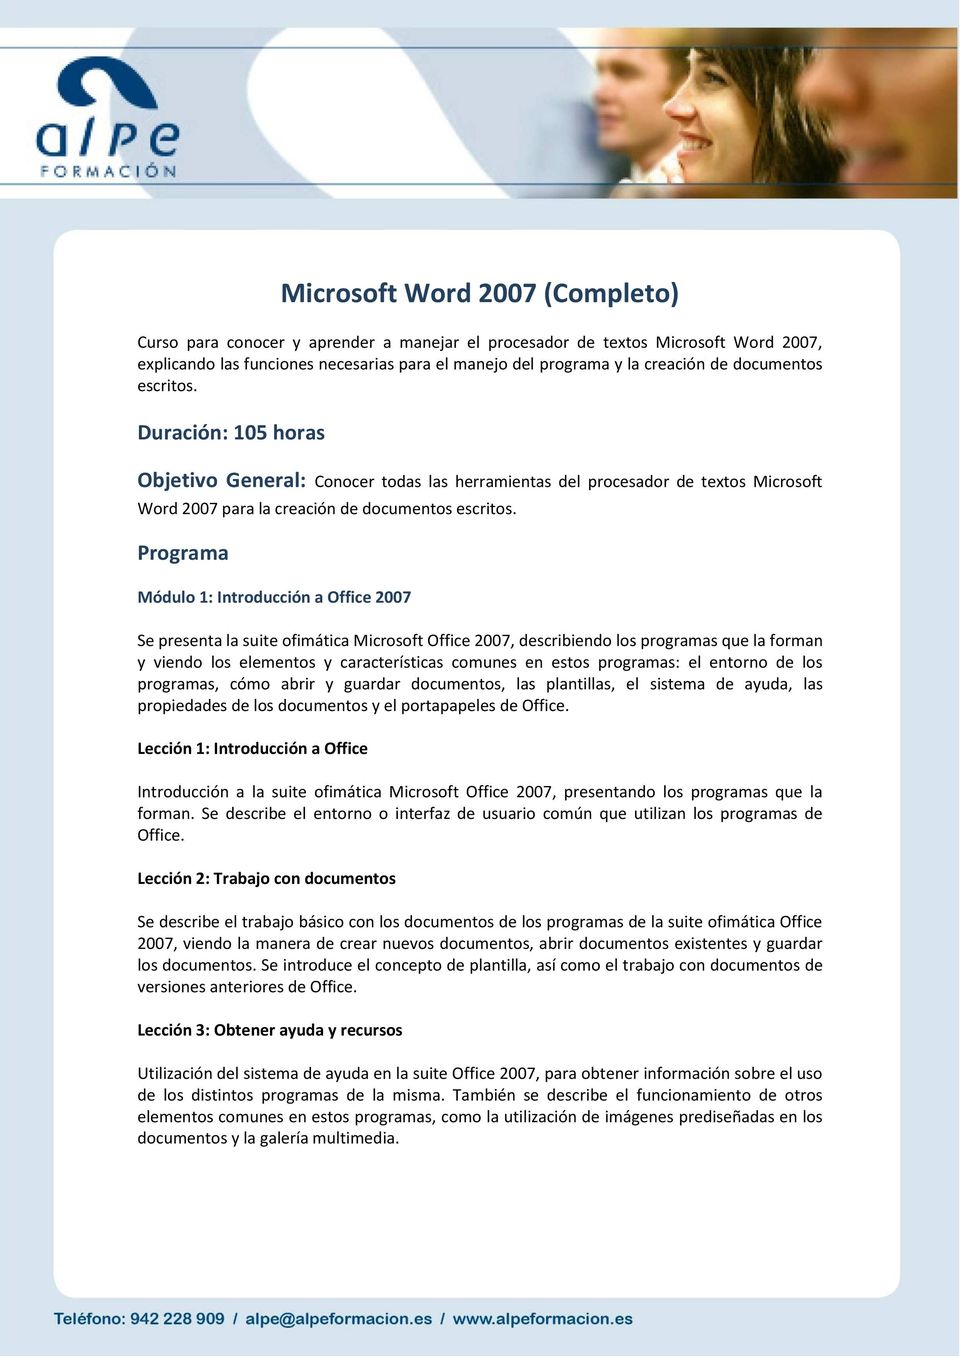 Programa Módulo 1: Introducción a Office 2007 Se presenta la suite ofimática Microsoft Office 2007, describiendo los programas que la forman y viendo los elementos y características comunes en estos